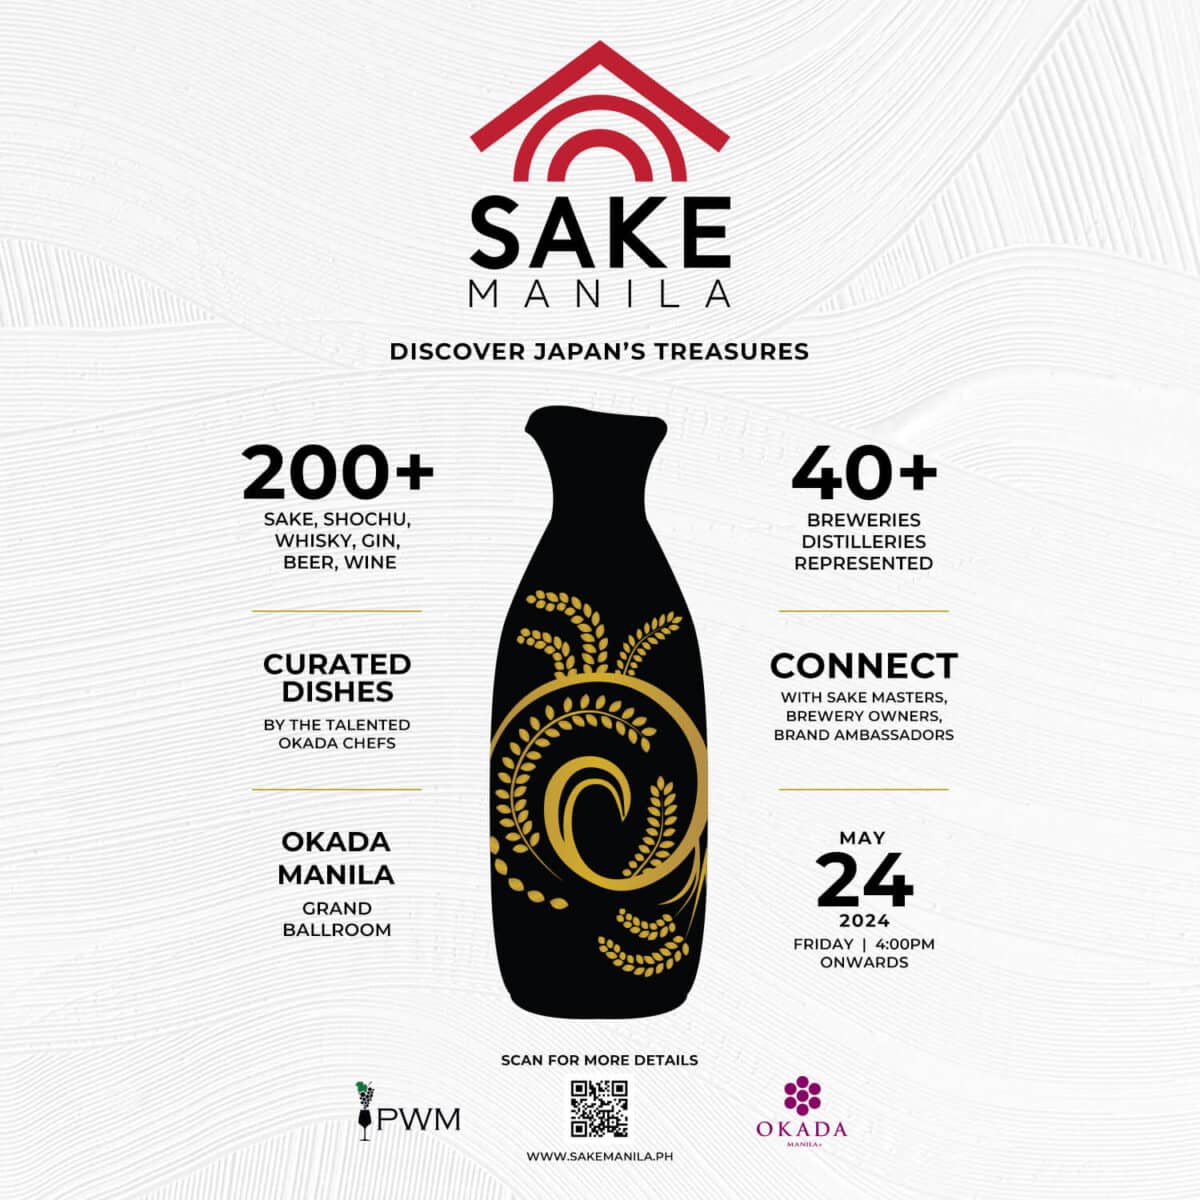 Sake Manila